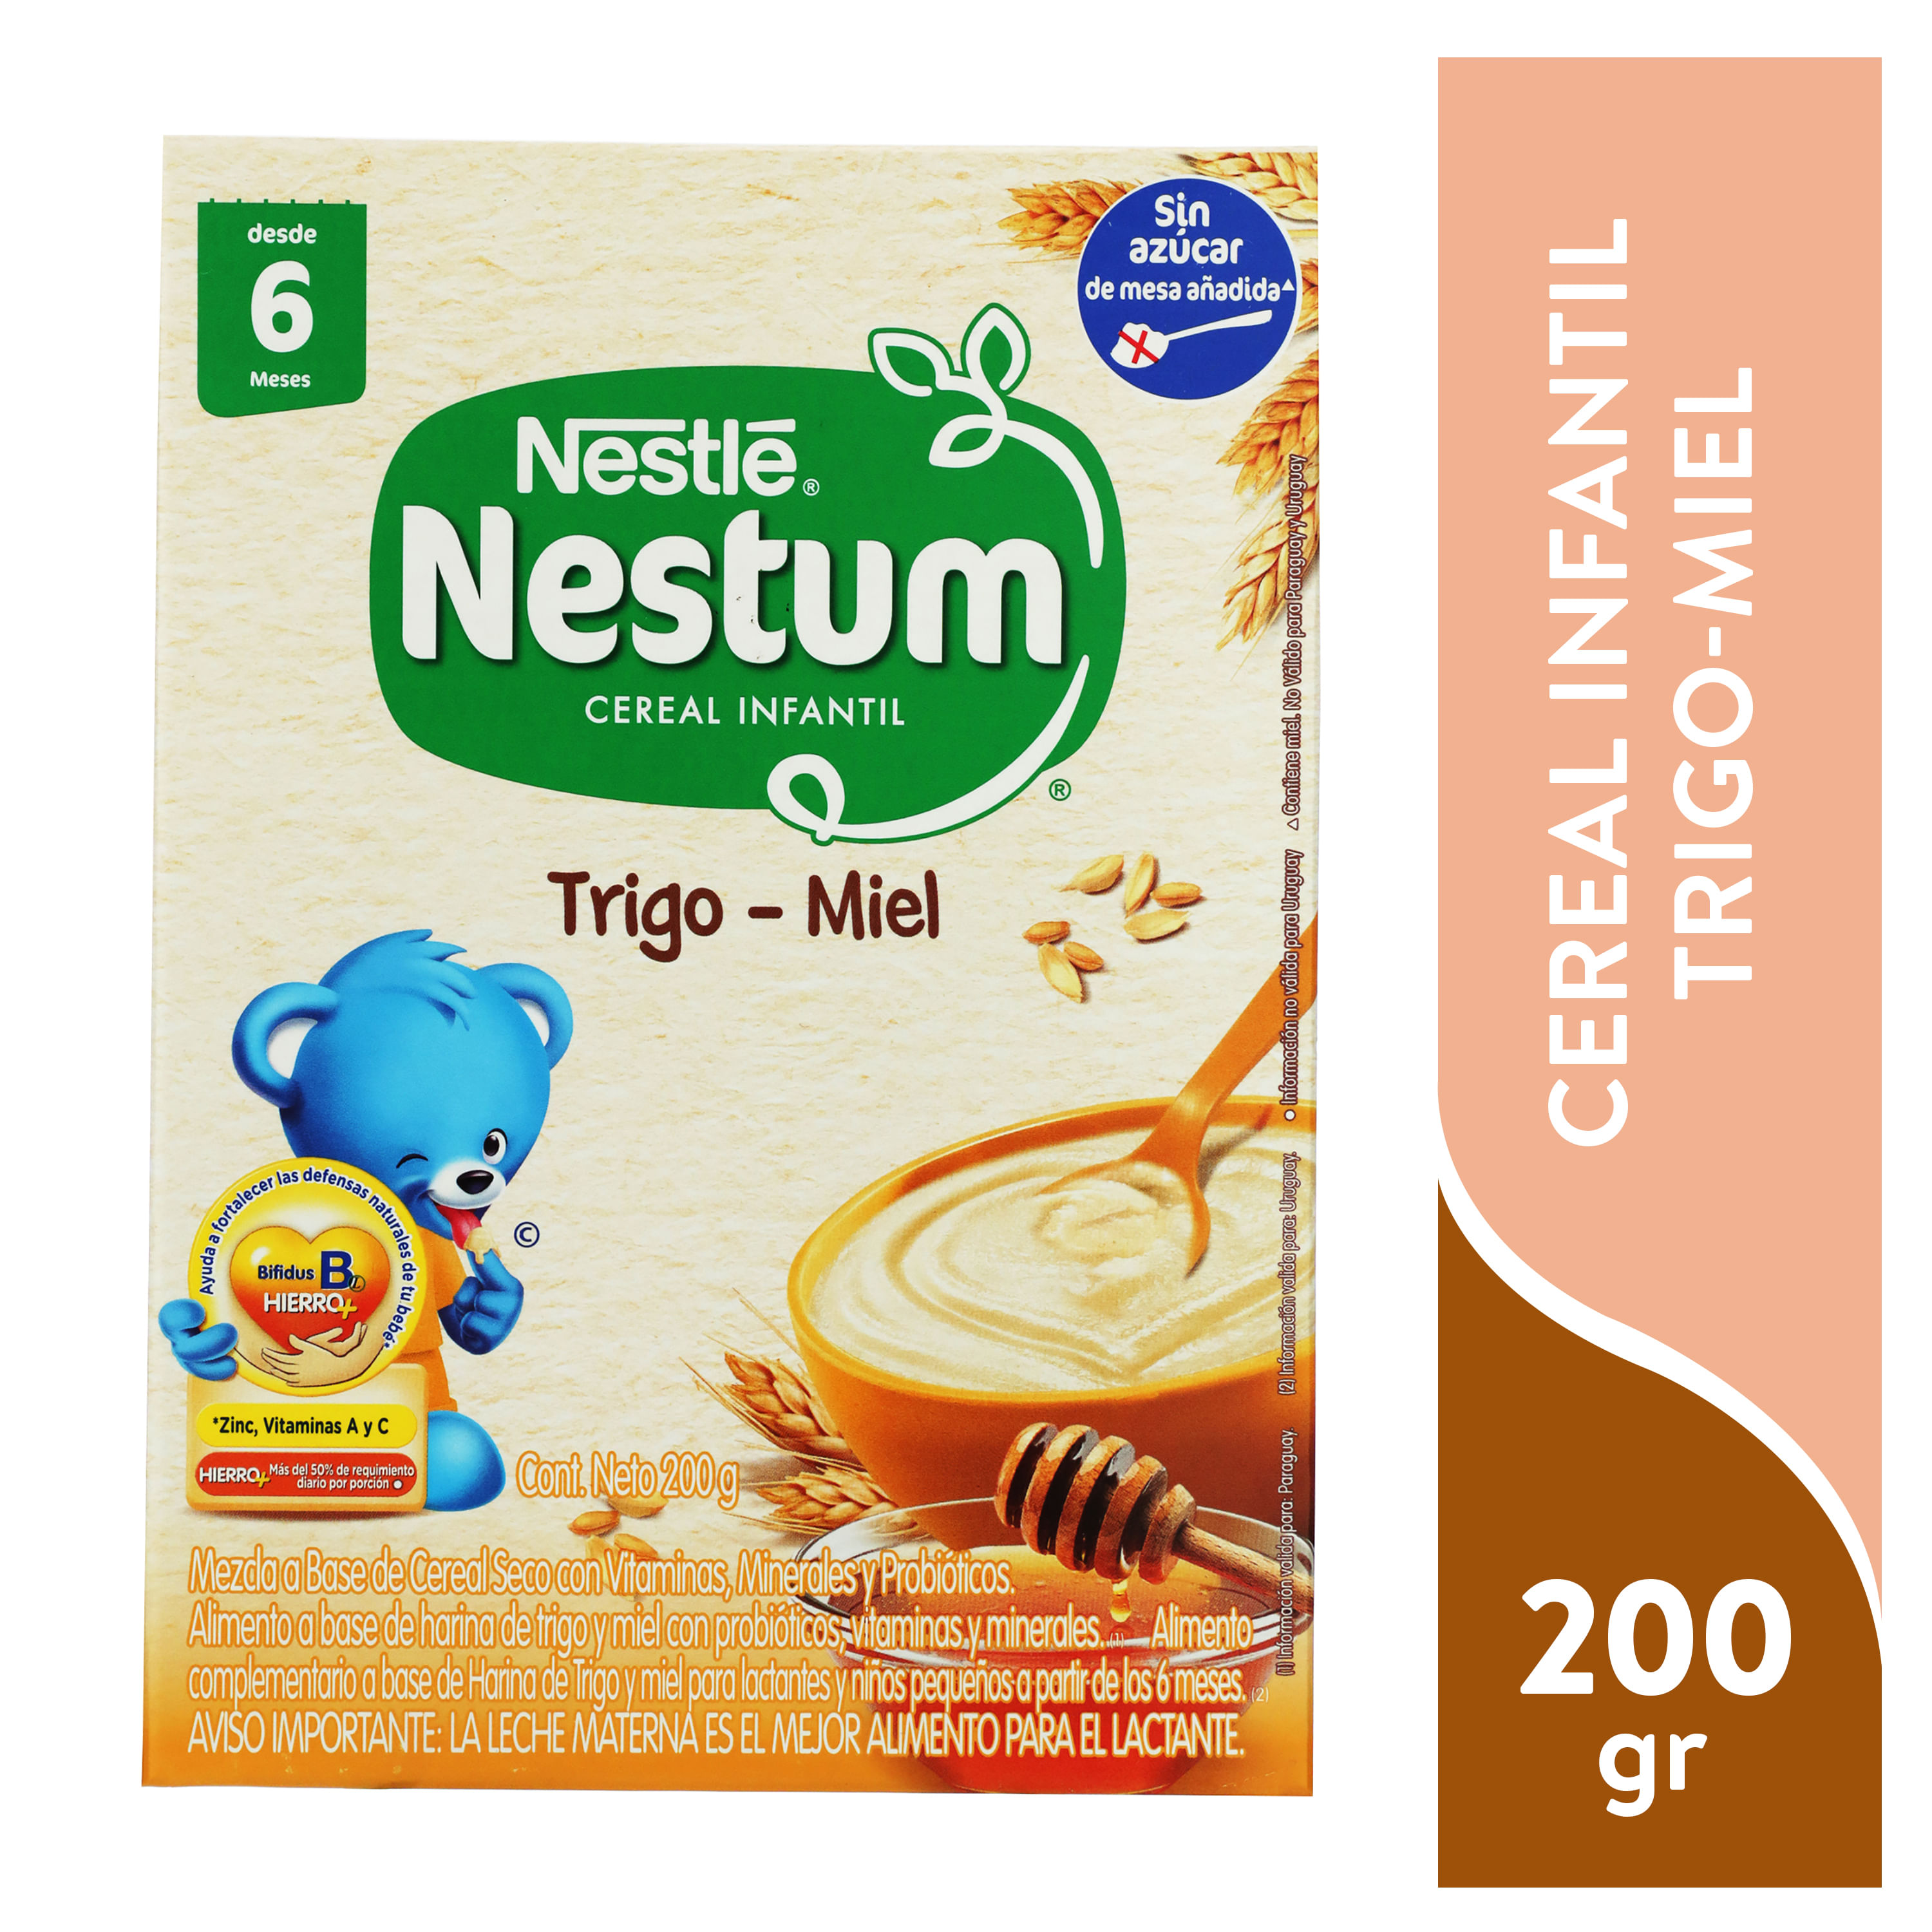 Nestlé Bebé Cereales Galletas Cereales 6 meses 450g comprar online